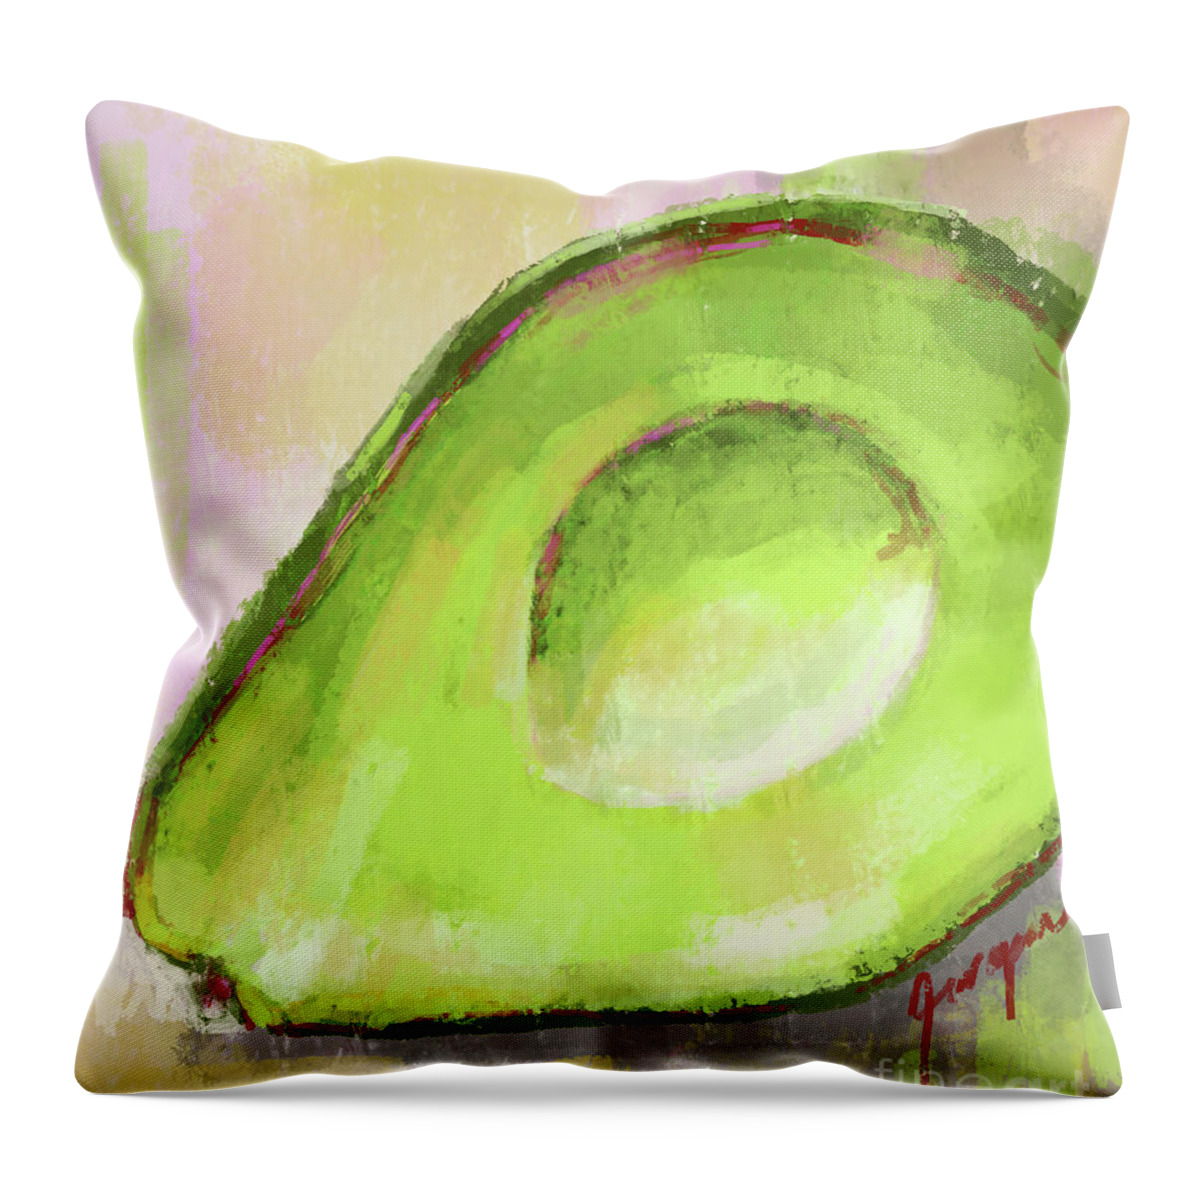 Modern Avocado Art Throw Pillow featuring the digital art Green Avocado, Modern Kitchen Decor by Patricia Awapara